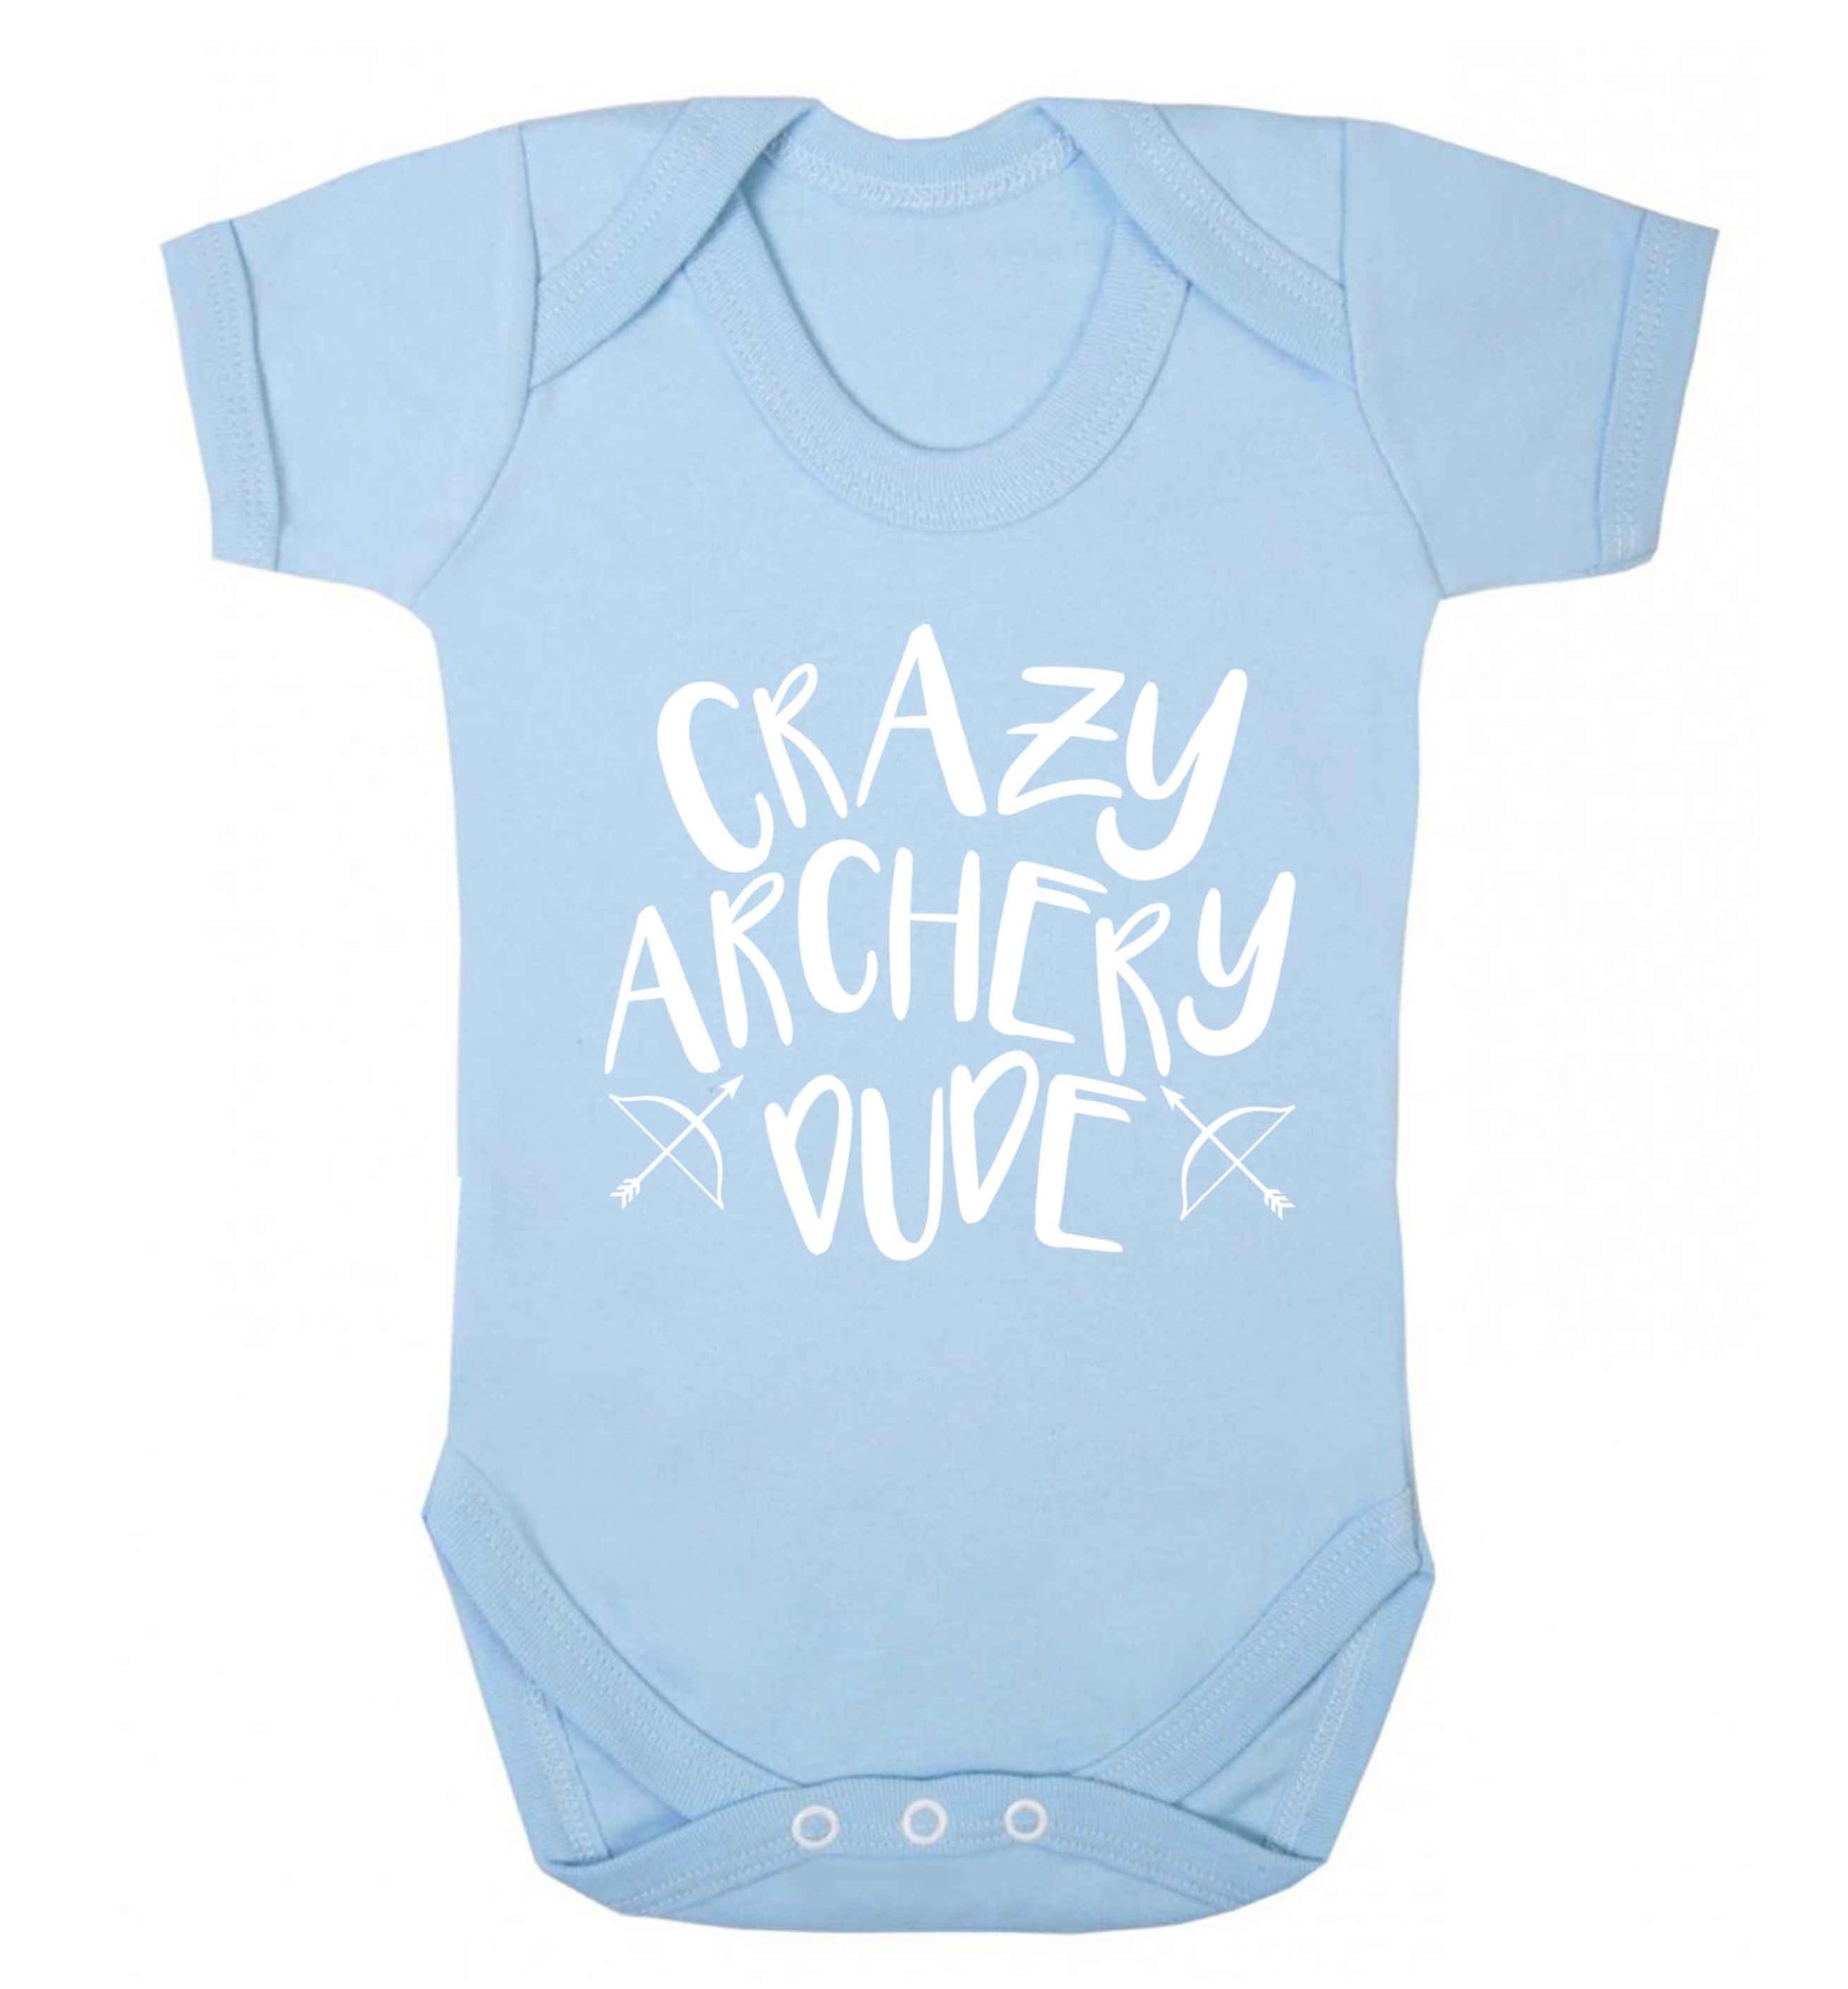 Crazy archery dude Baby Vest pale blue 18-24 months